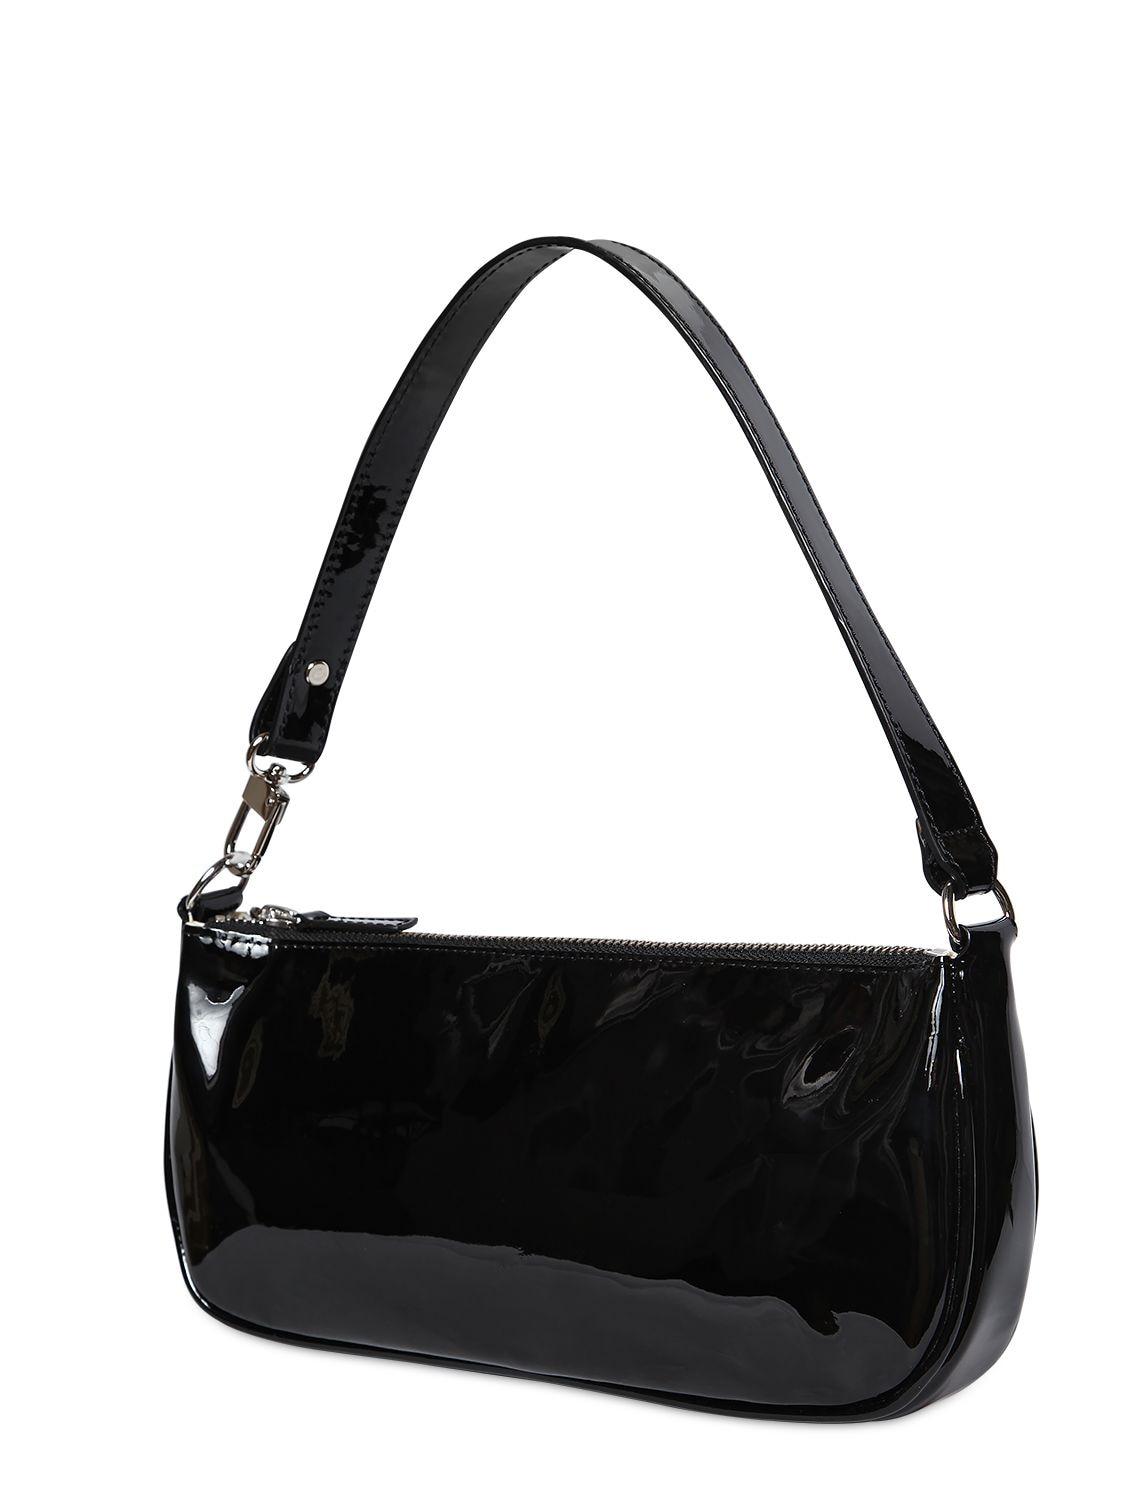 Rachel leather mini bag By Far Beige in Leather - 17146460